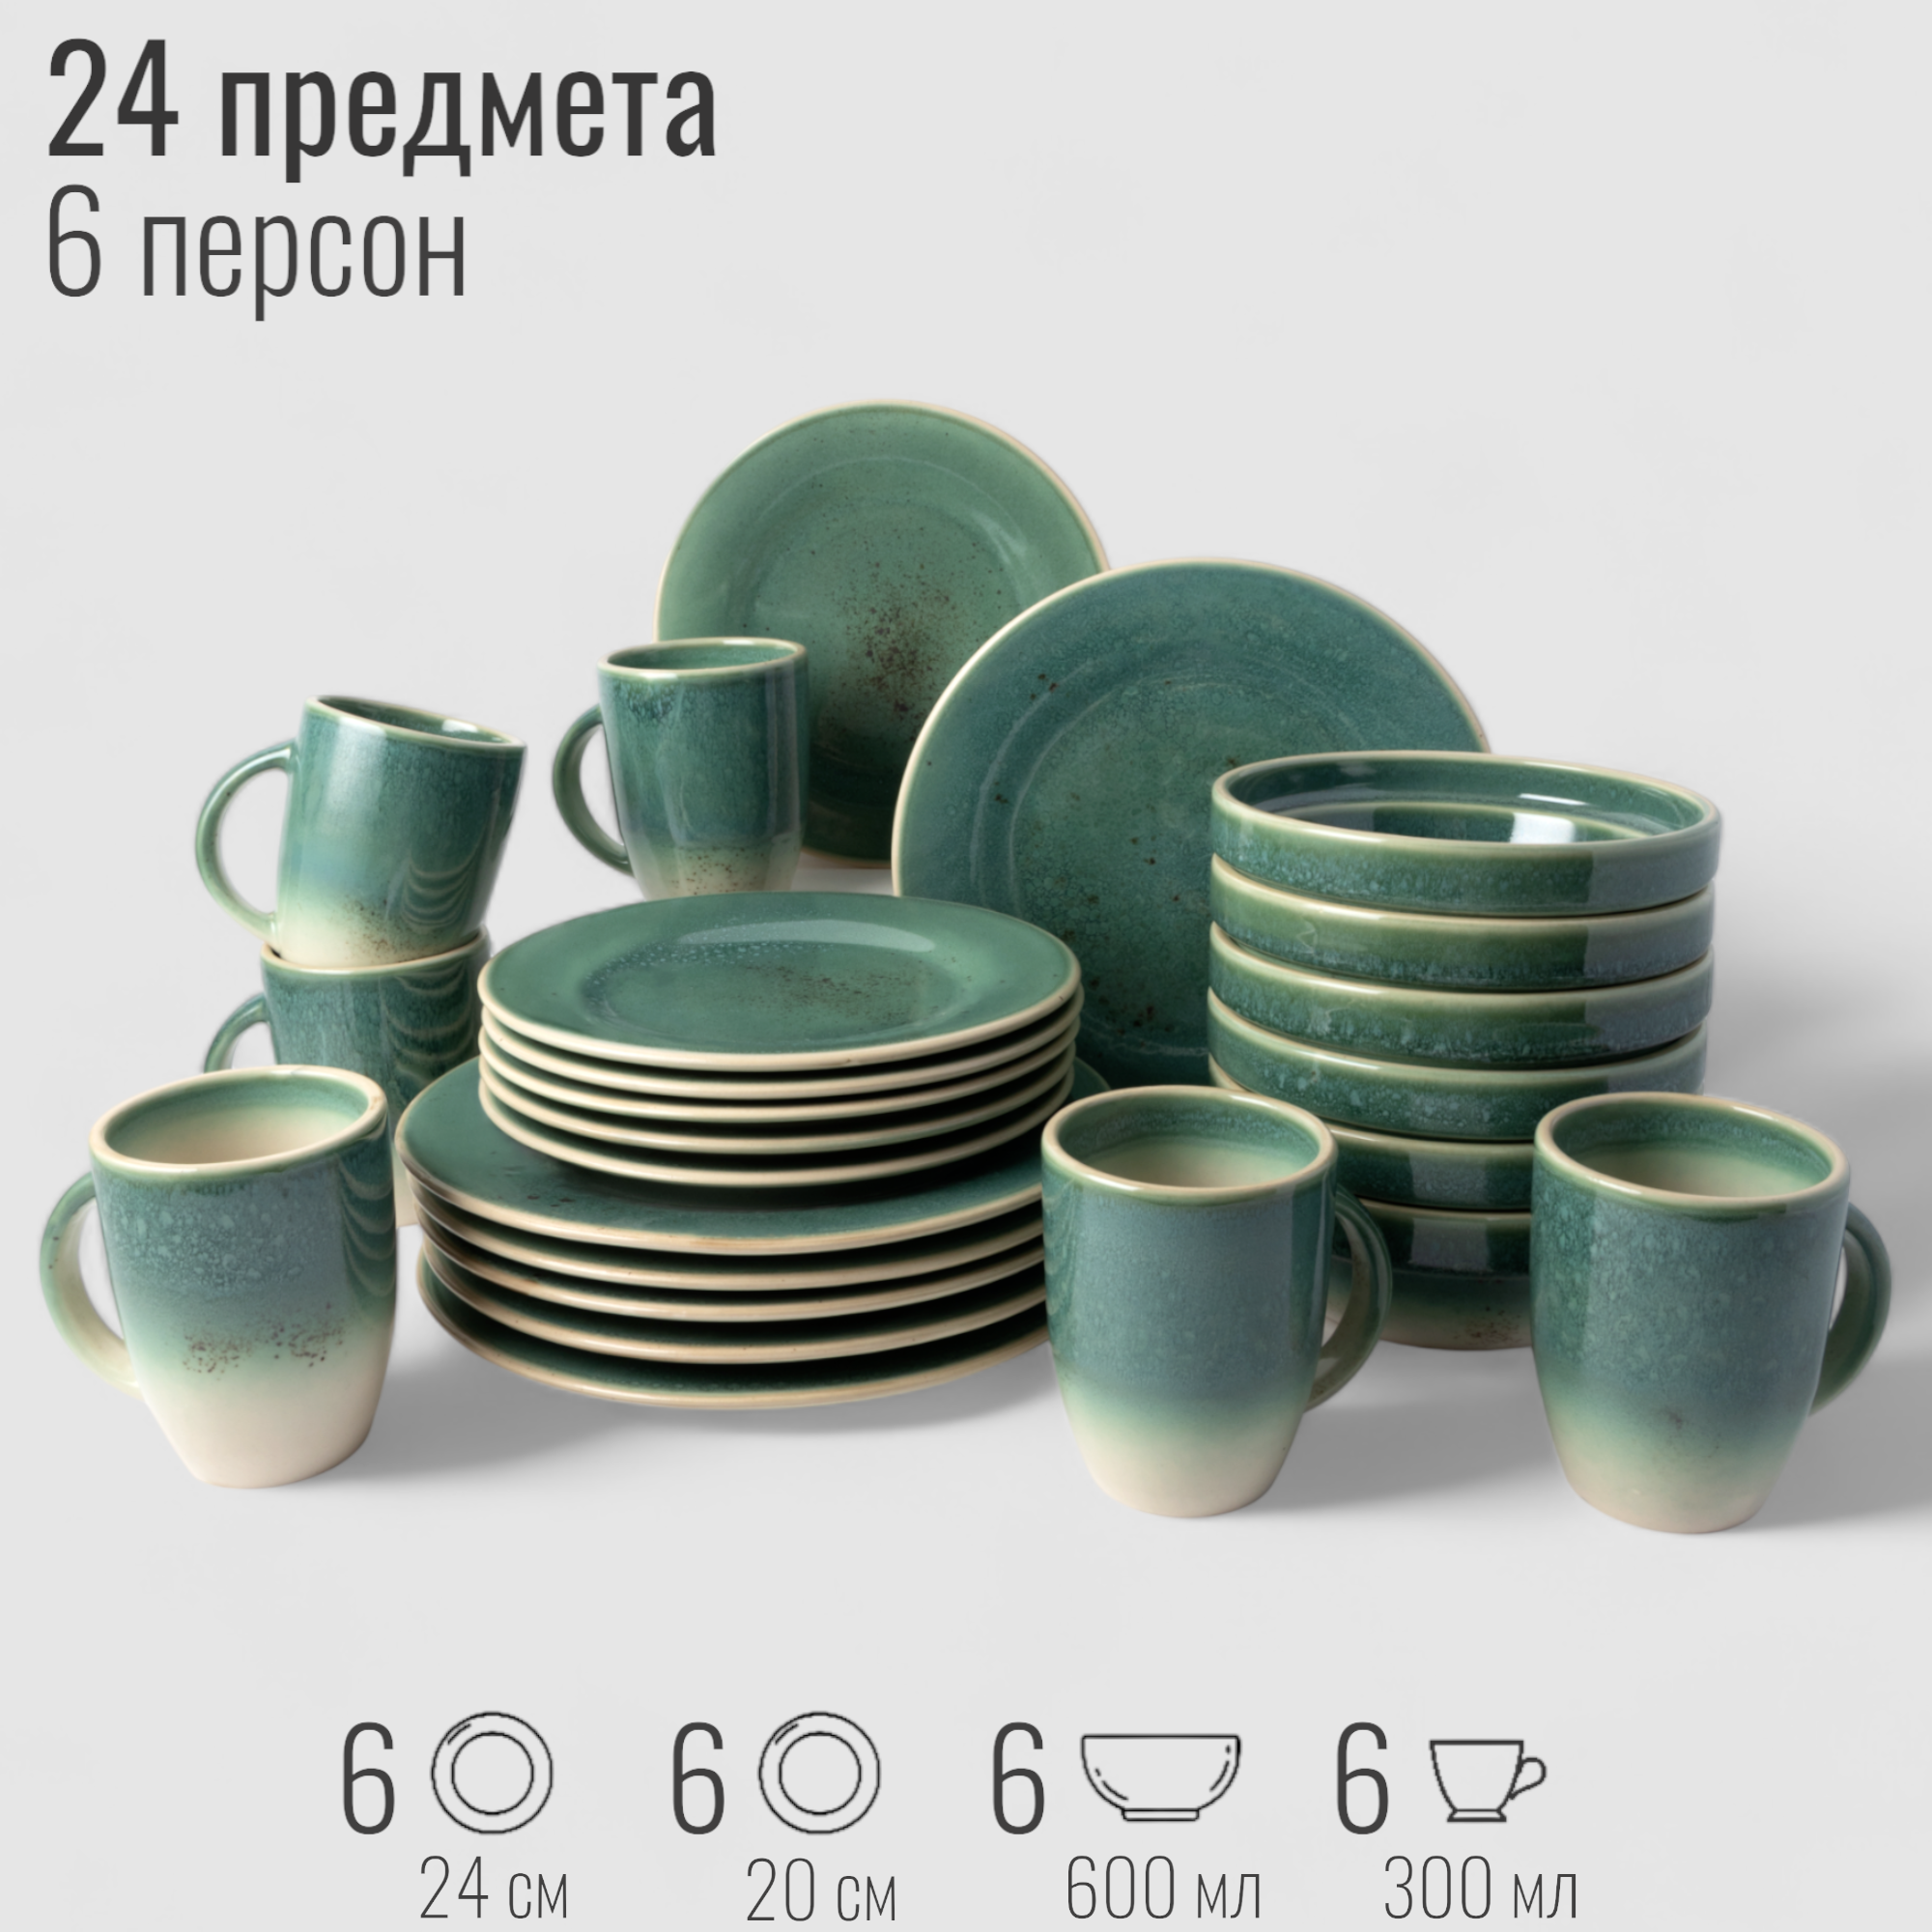 Набор посуды столовой на 6 персон, 24 предмета "Эрбосо Реаттиво", фарфор, сервиз обеденный бирюзовый